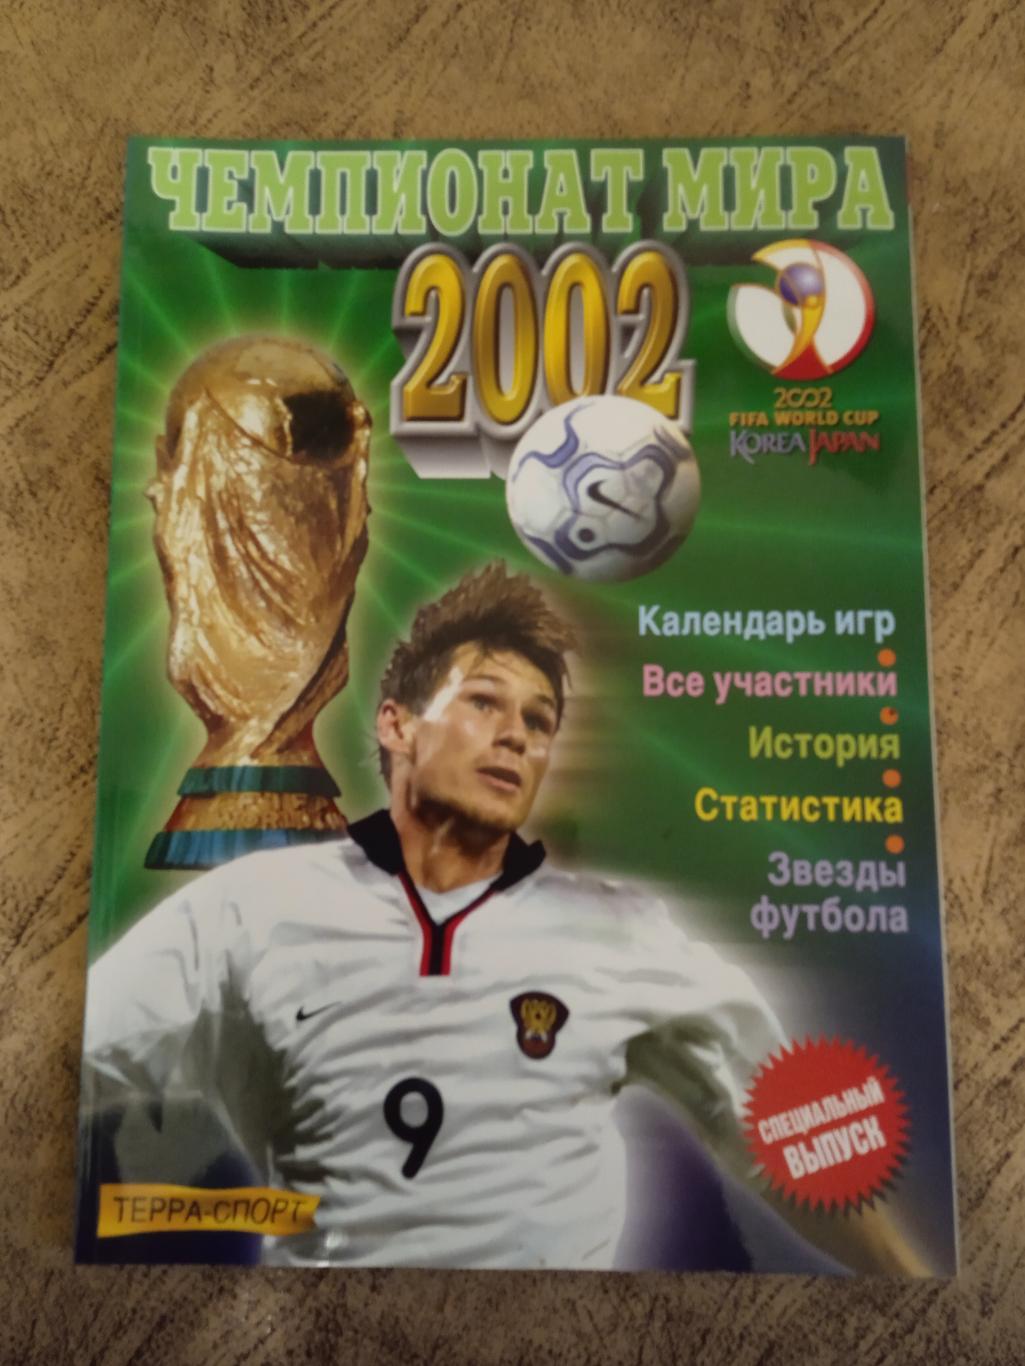 Чемпионат мира по футболу 2002.Корея/Япония. Терра-Спорт.Специальный выпуск.